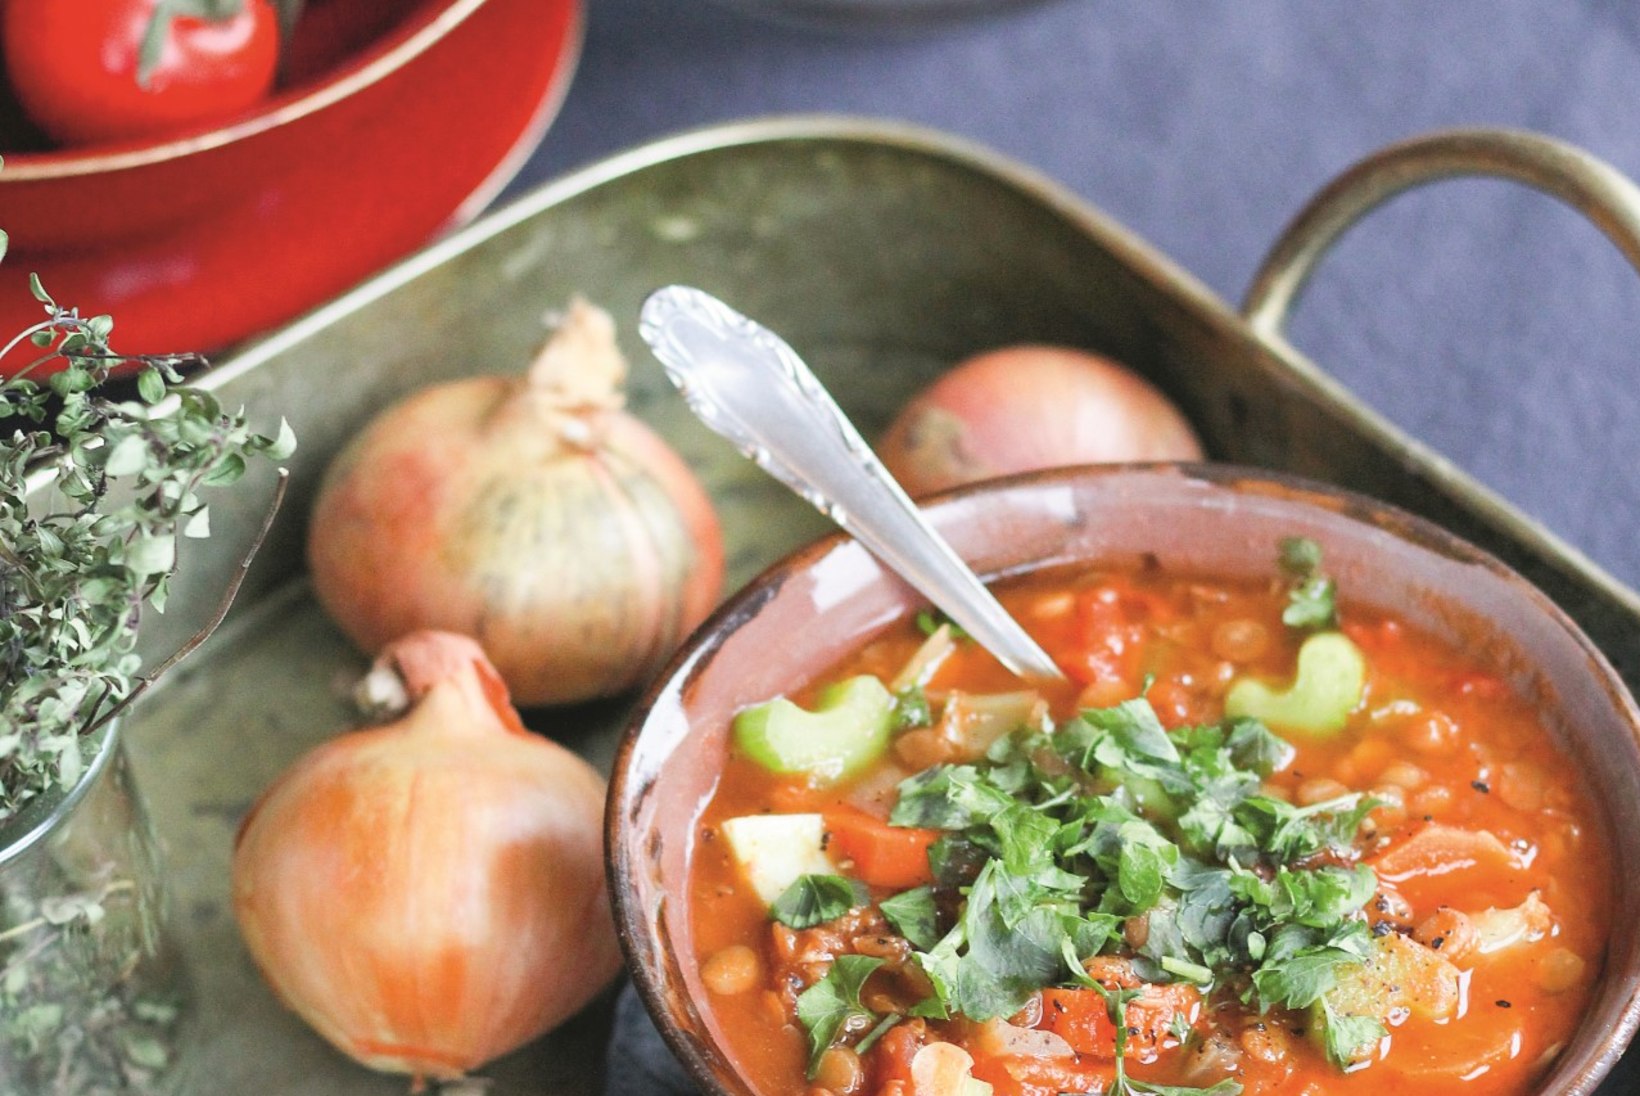 Vastlaroad uues kuues: valmista suppi hoopis läätsedest ja kuklite asemel küpseta pliine!